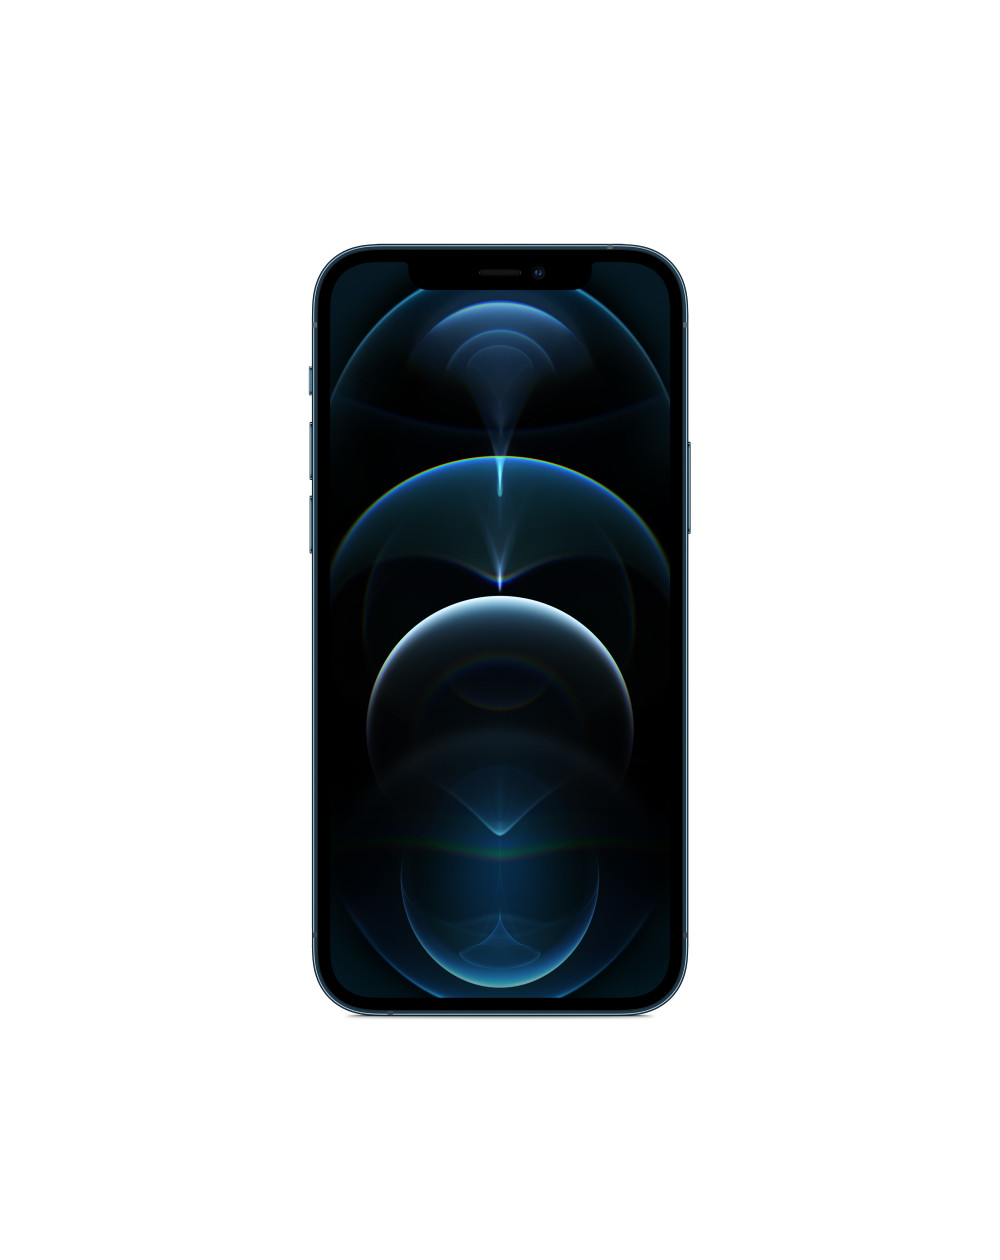 iPhone 12 Pro 256GB Pacific Blue - Prodotto rigenerato di grado B Plus